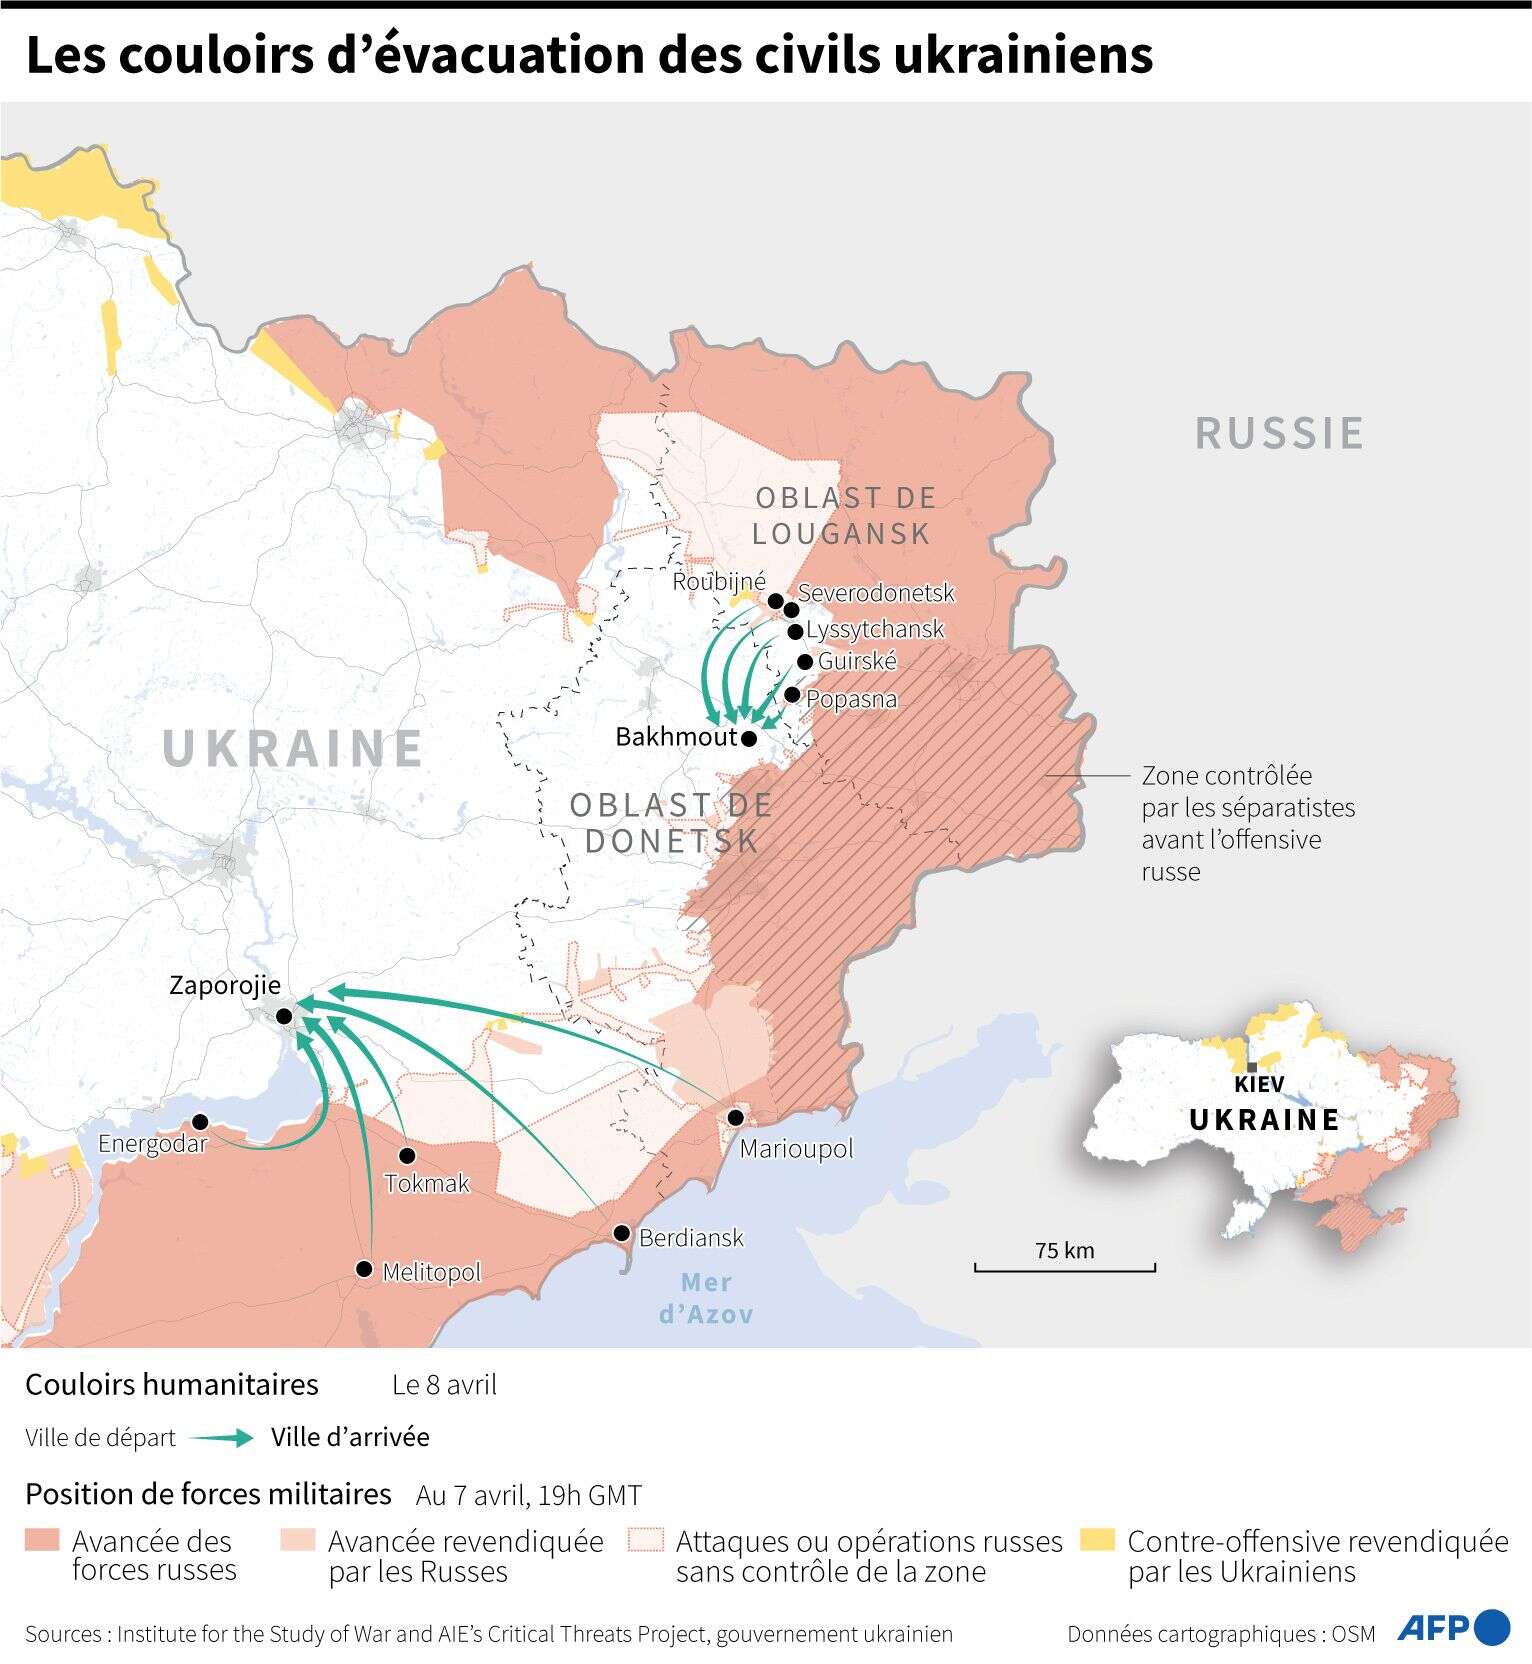 Les couloirs d'évacuation des civils ukrainiens au 8 avril 2022